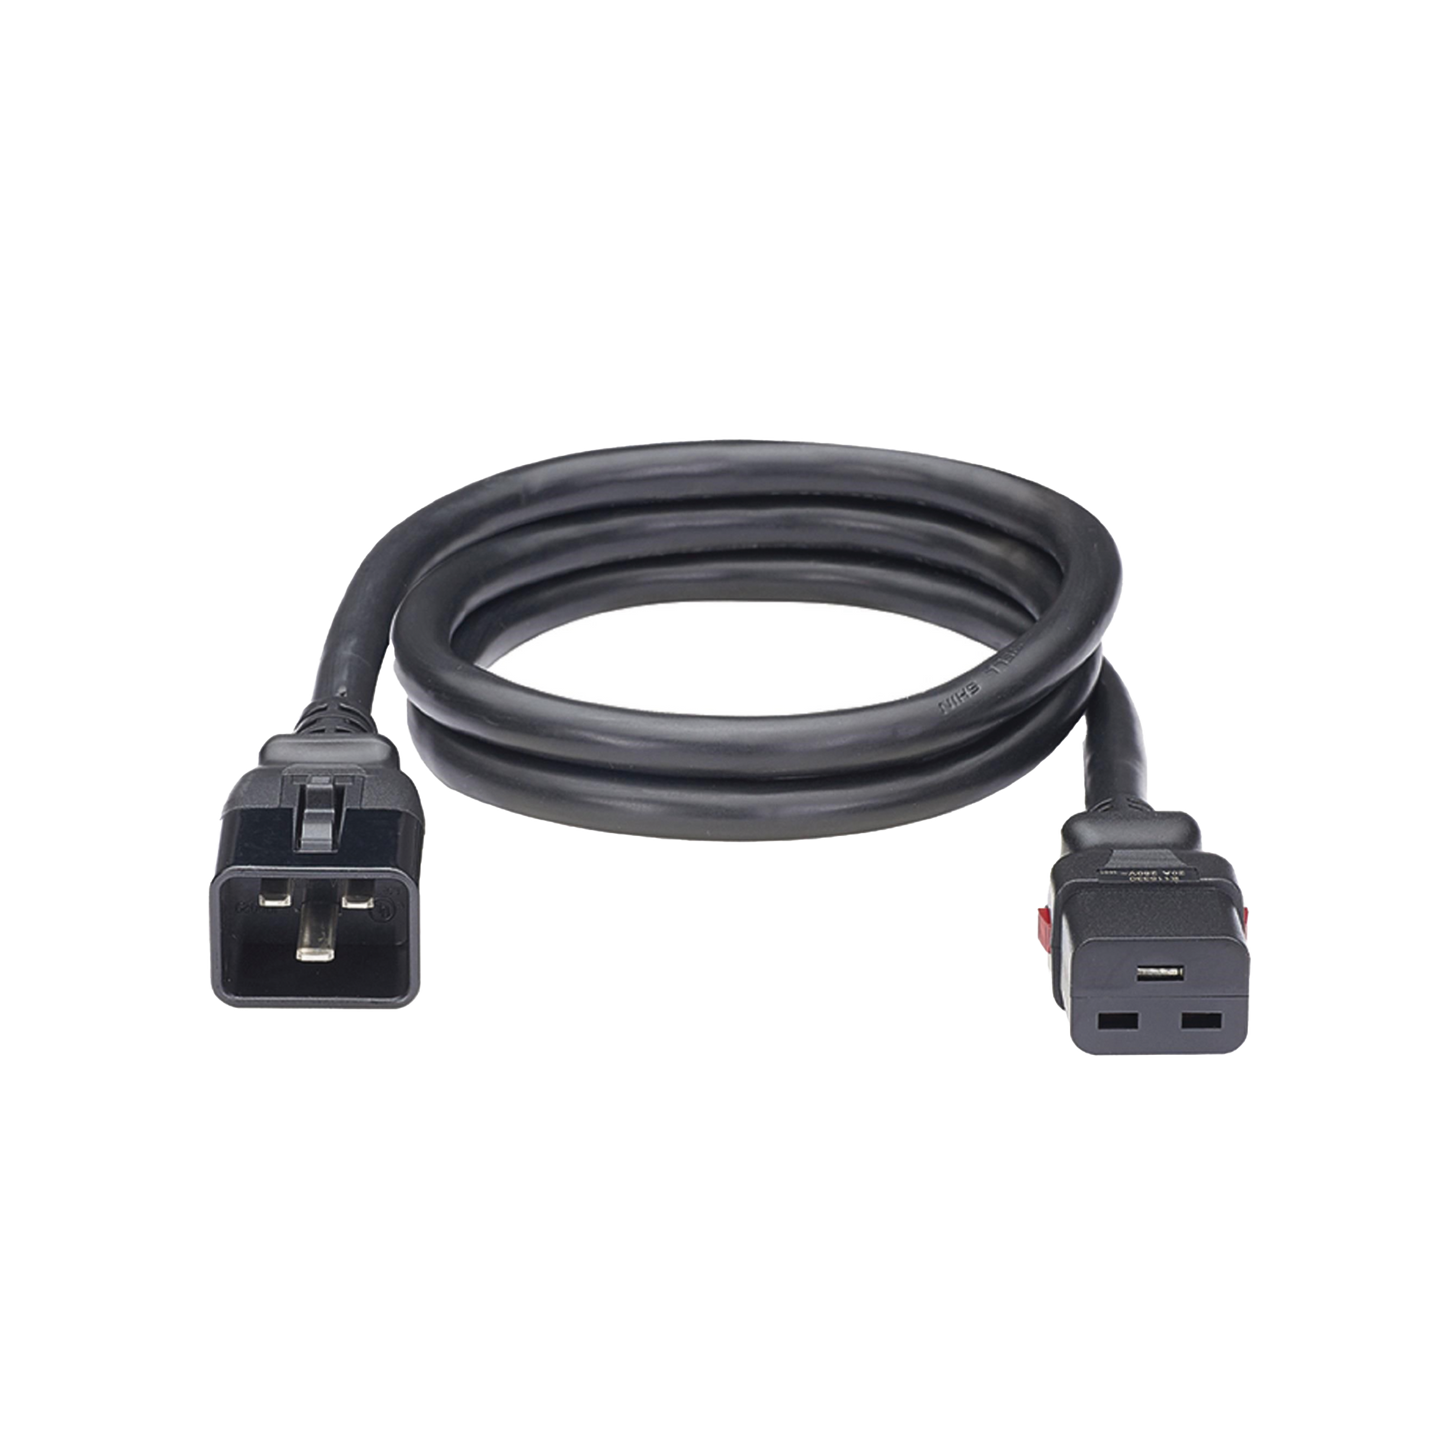 Cable de Alimentación Eléctrica Con Bloqueo de Seguridad, de IEC C20 a IEC C19, 60 cm de Largo, Color Negro, Paquete de 10 Piezas